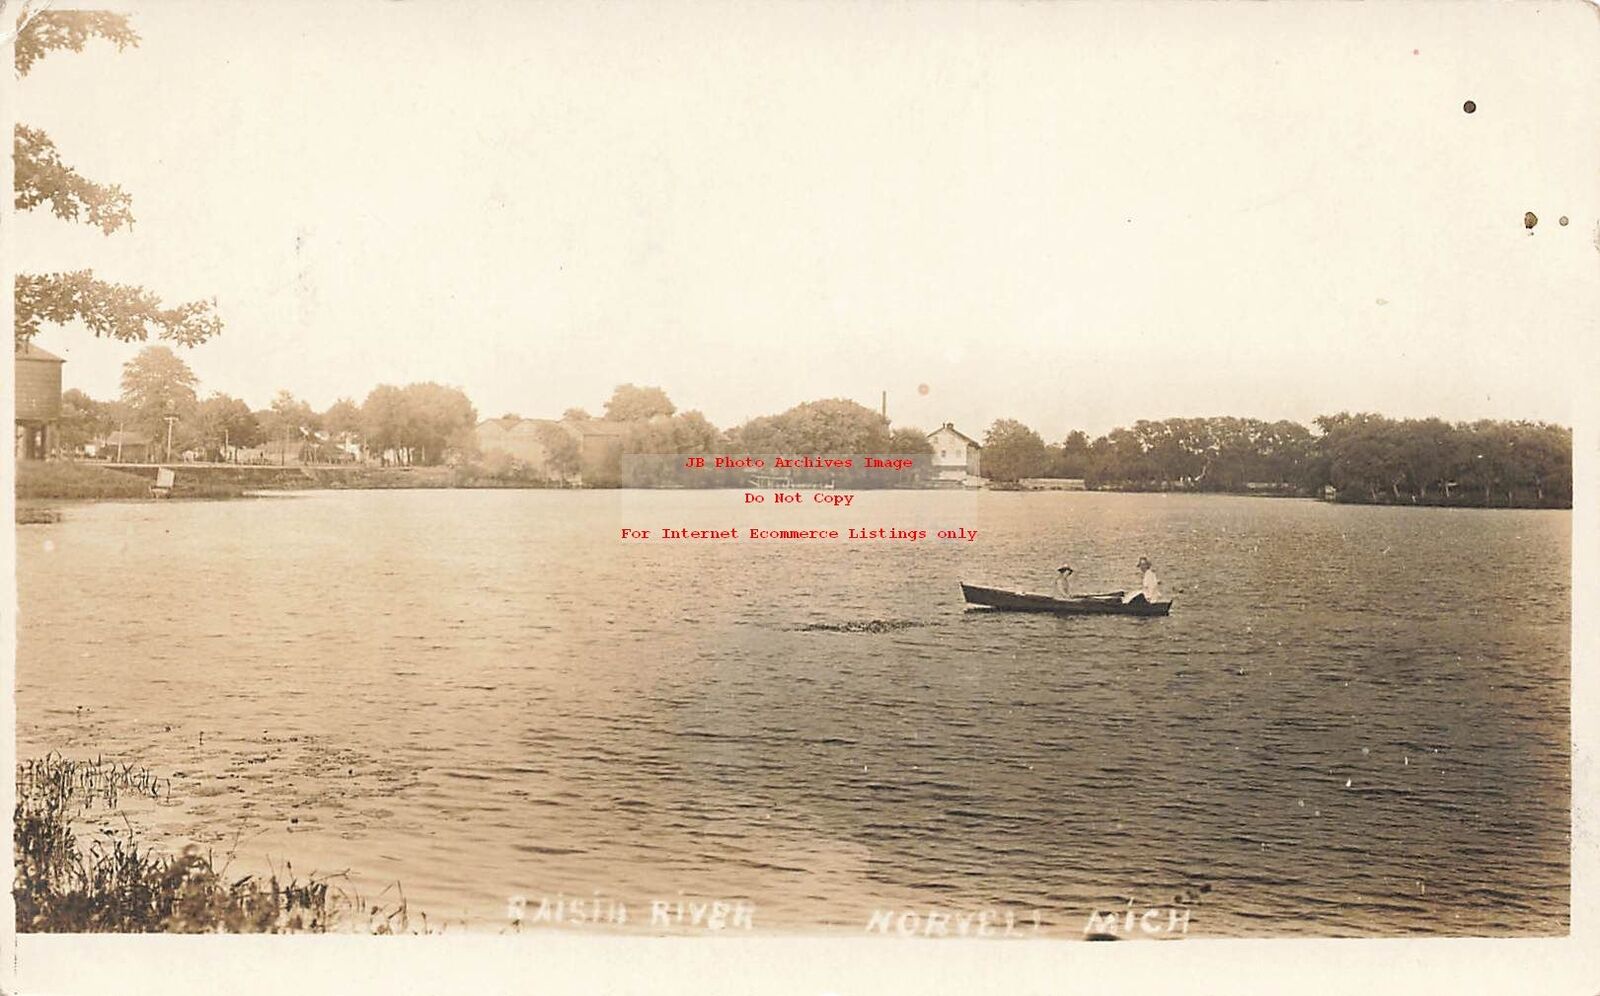 MI, Norvell, Michigan, RPPC, Raisin River, Boating, 1912 PM, Photo